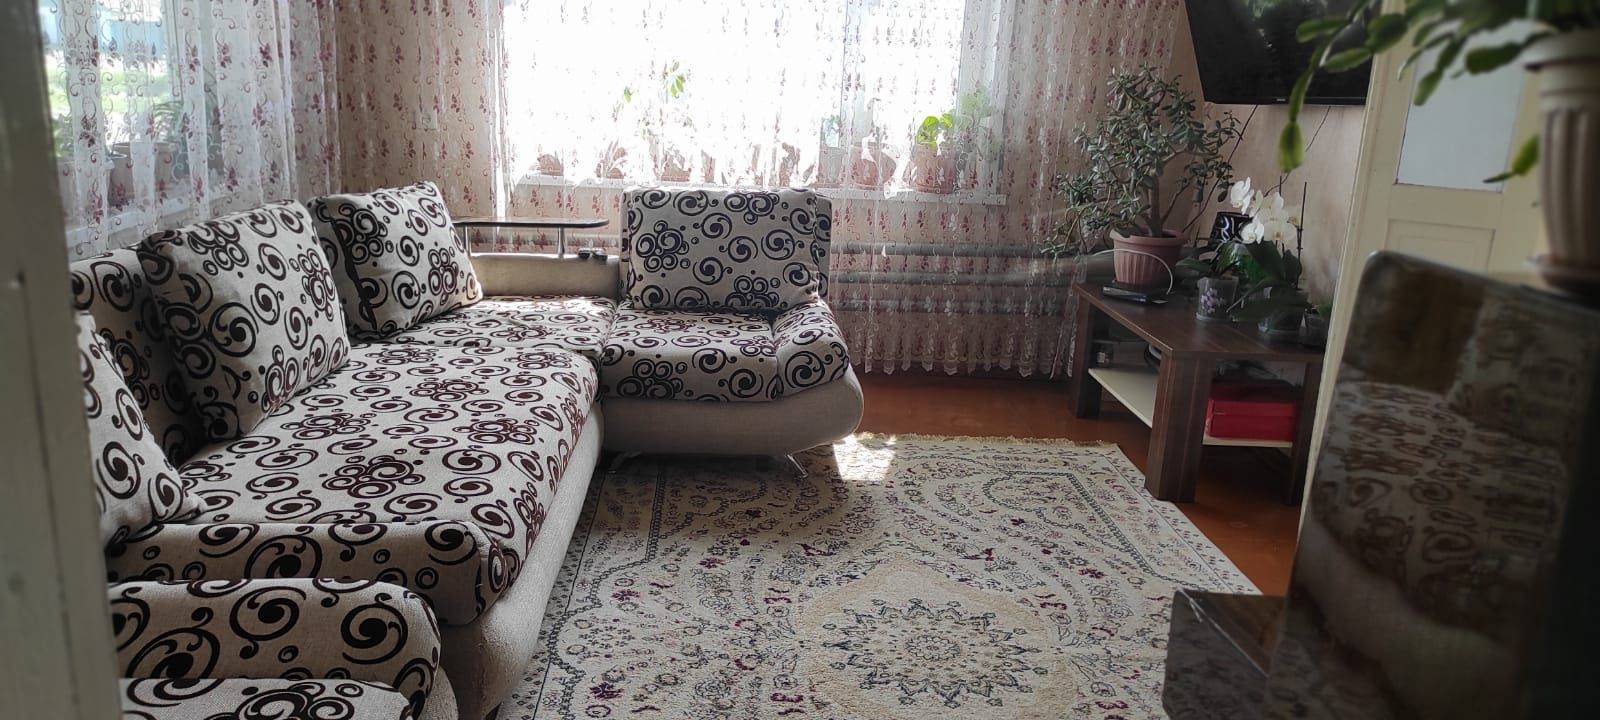 Продается дом в городе Щучинск